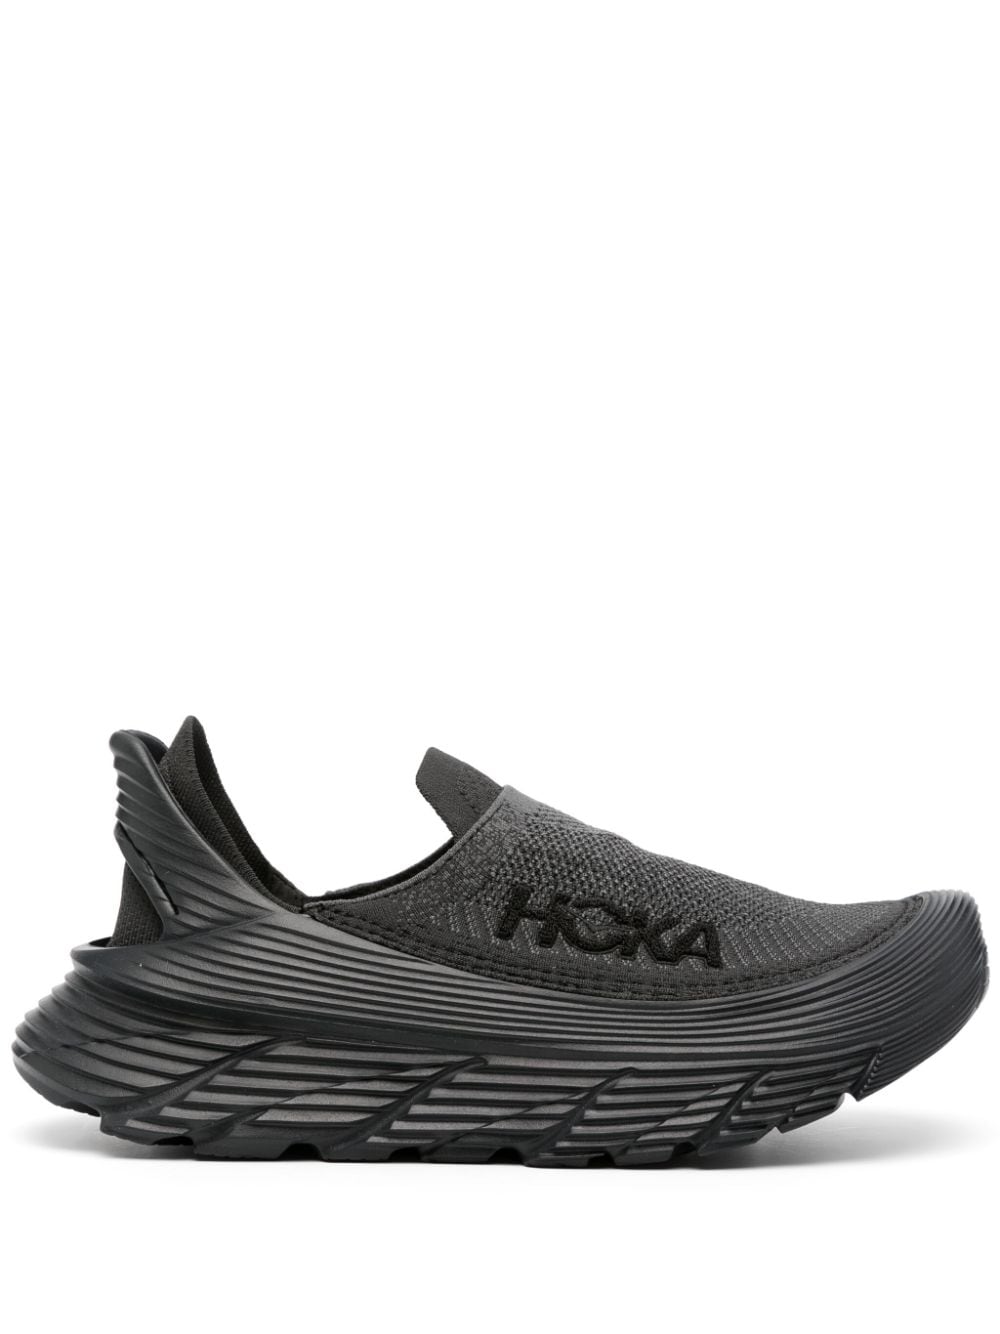 Hoka Restore Tc Slip-on In Black